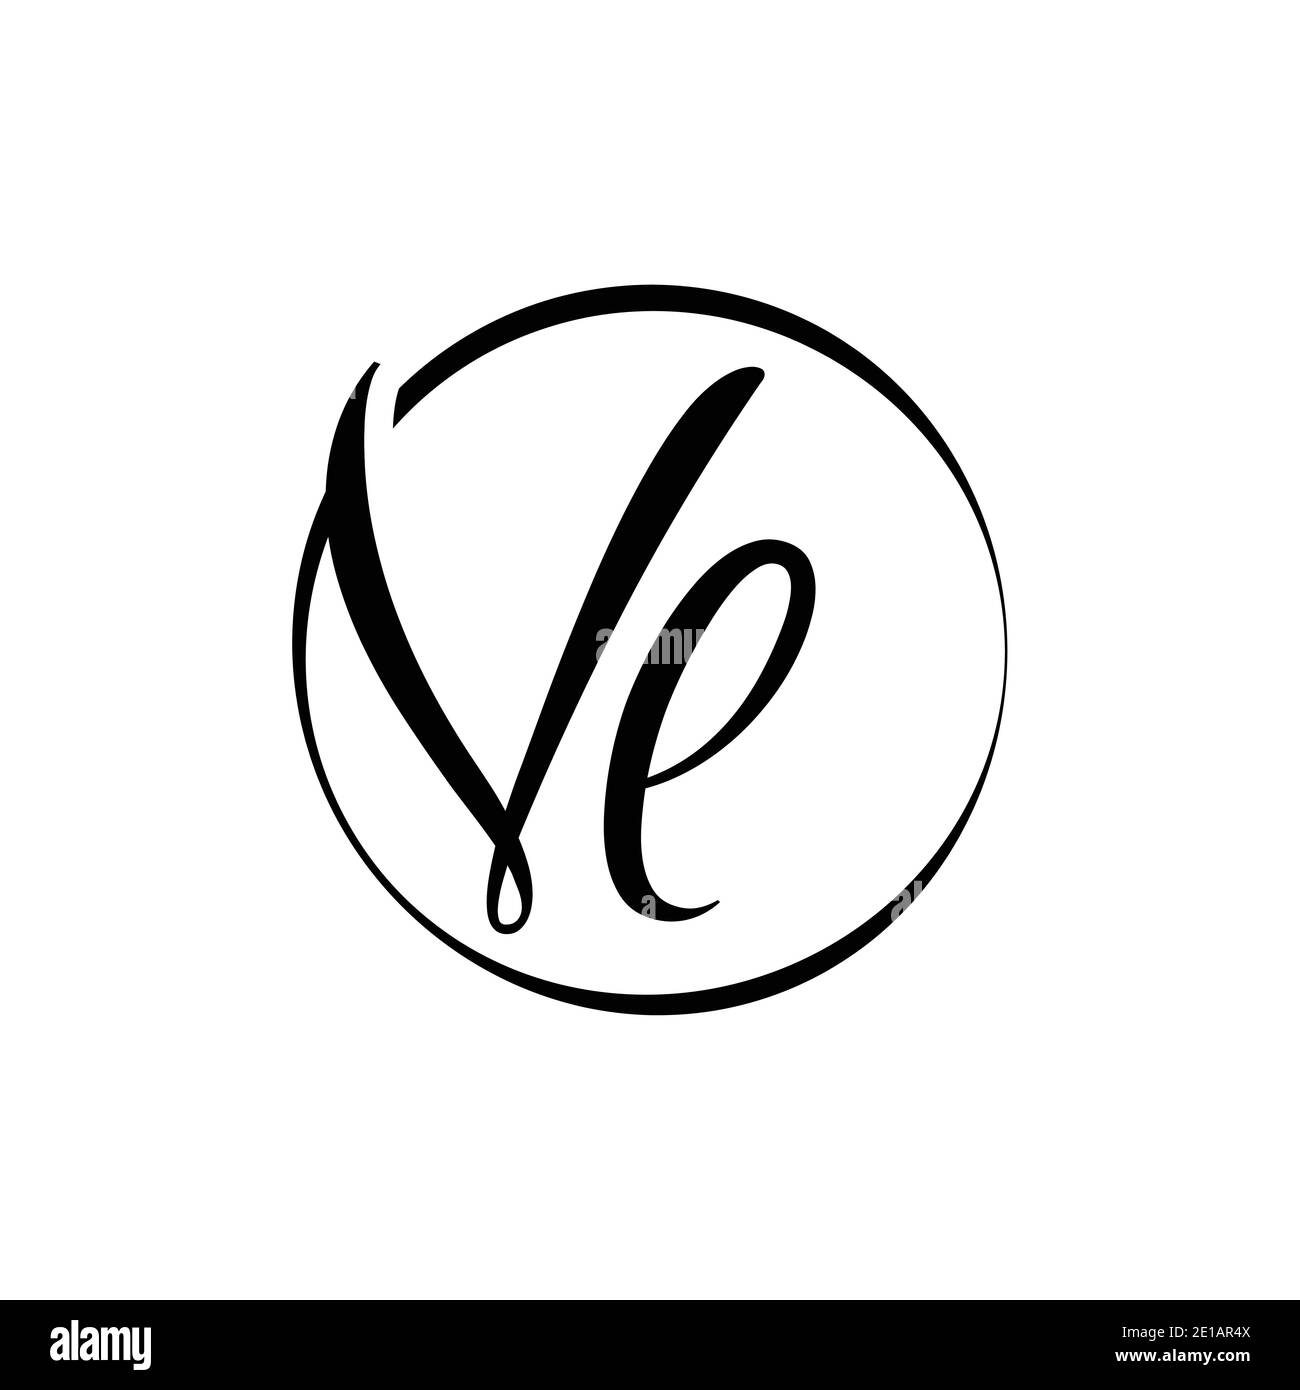 VL Logo Design. VL Letter Logo Vector Illustration - Vector Stock Vector  Image & Art - Alamy